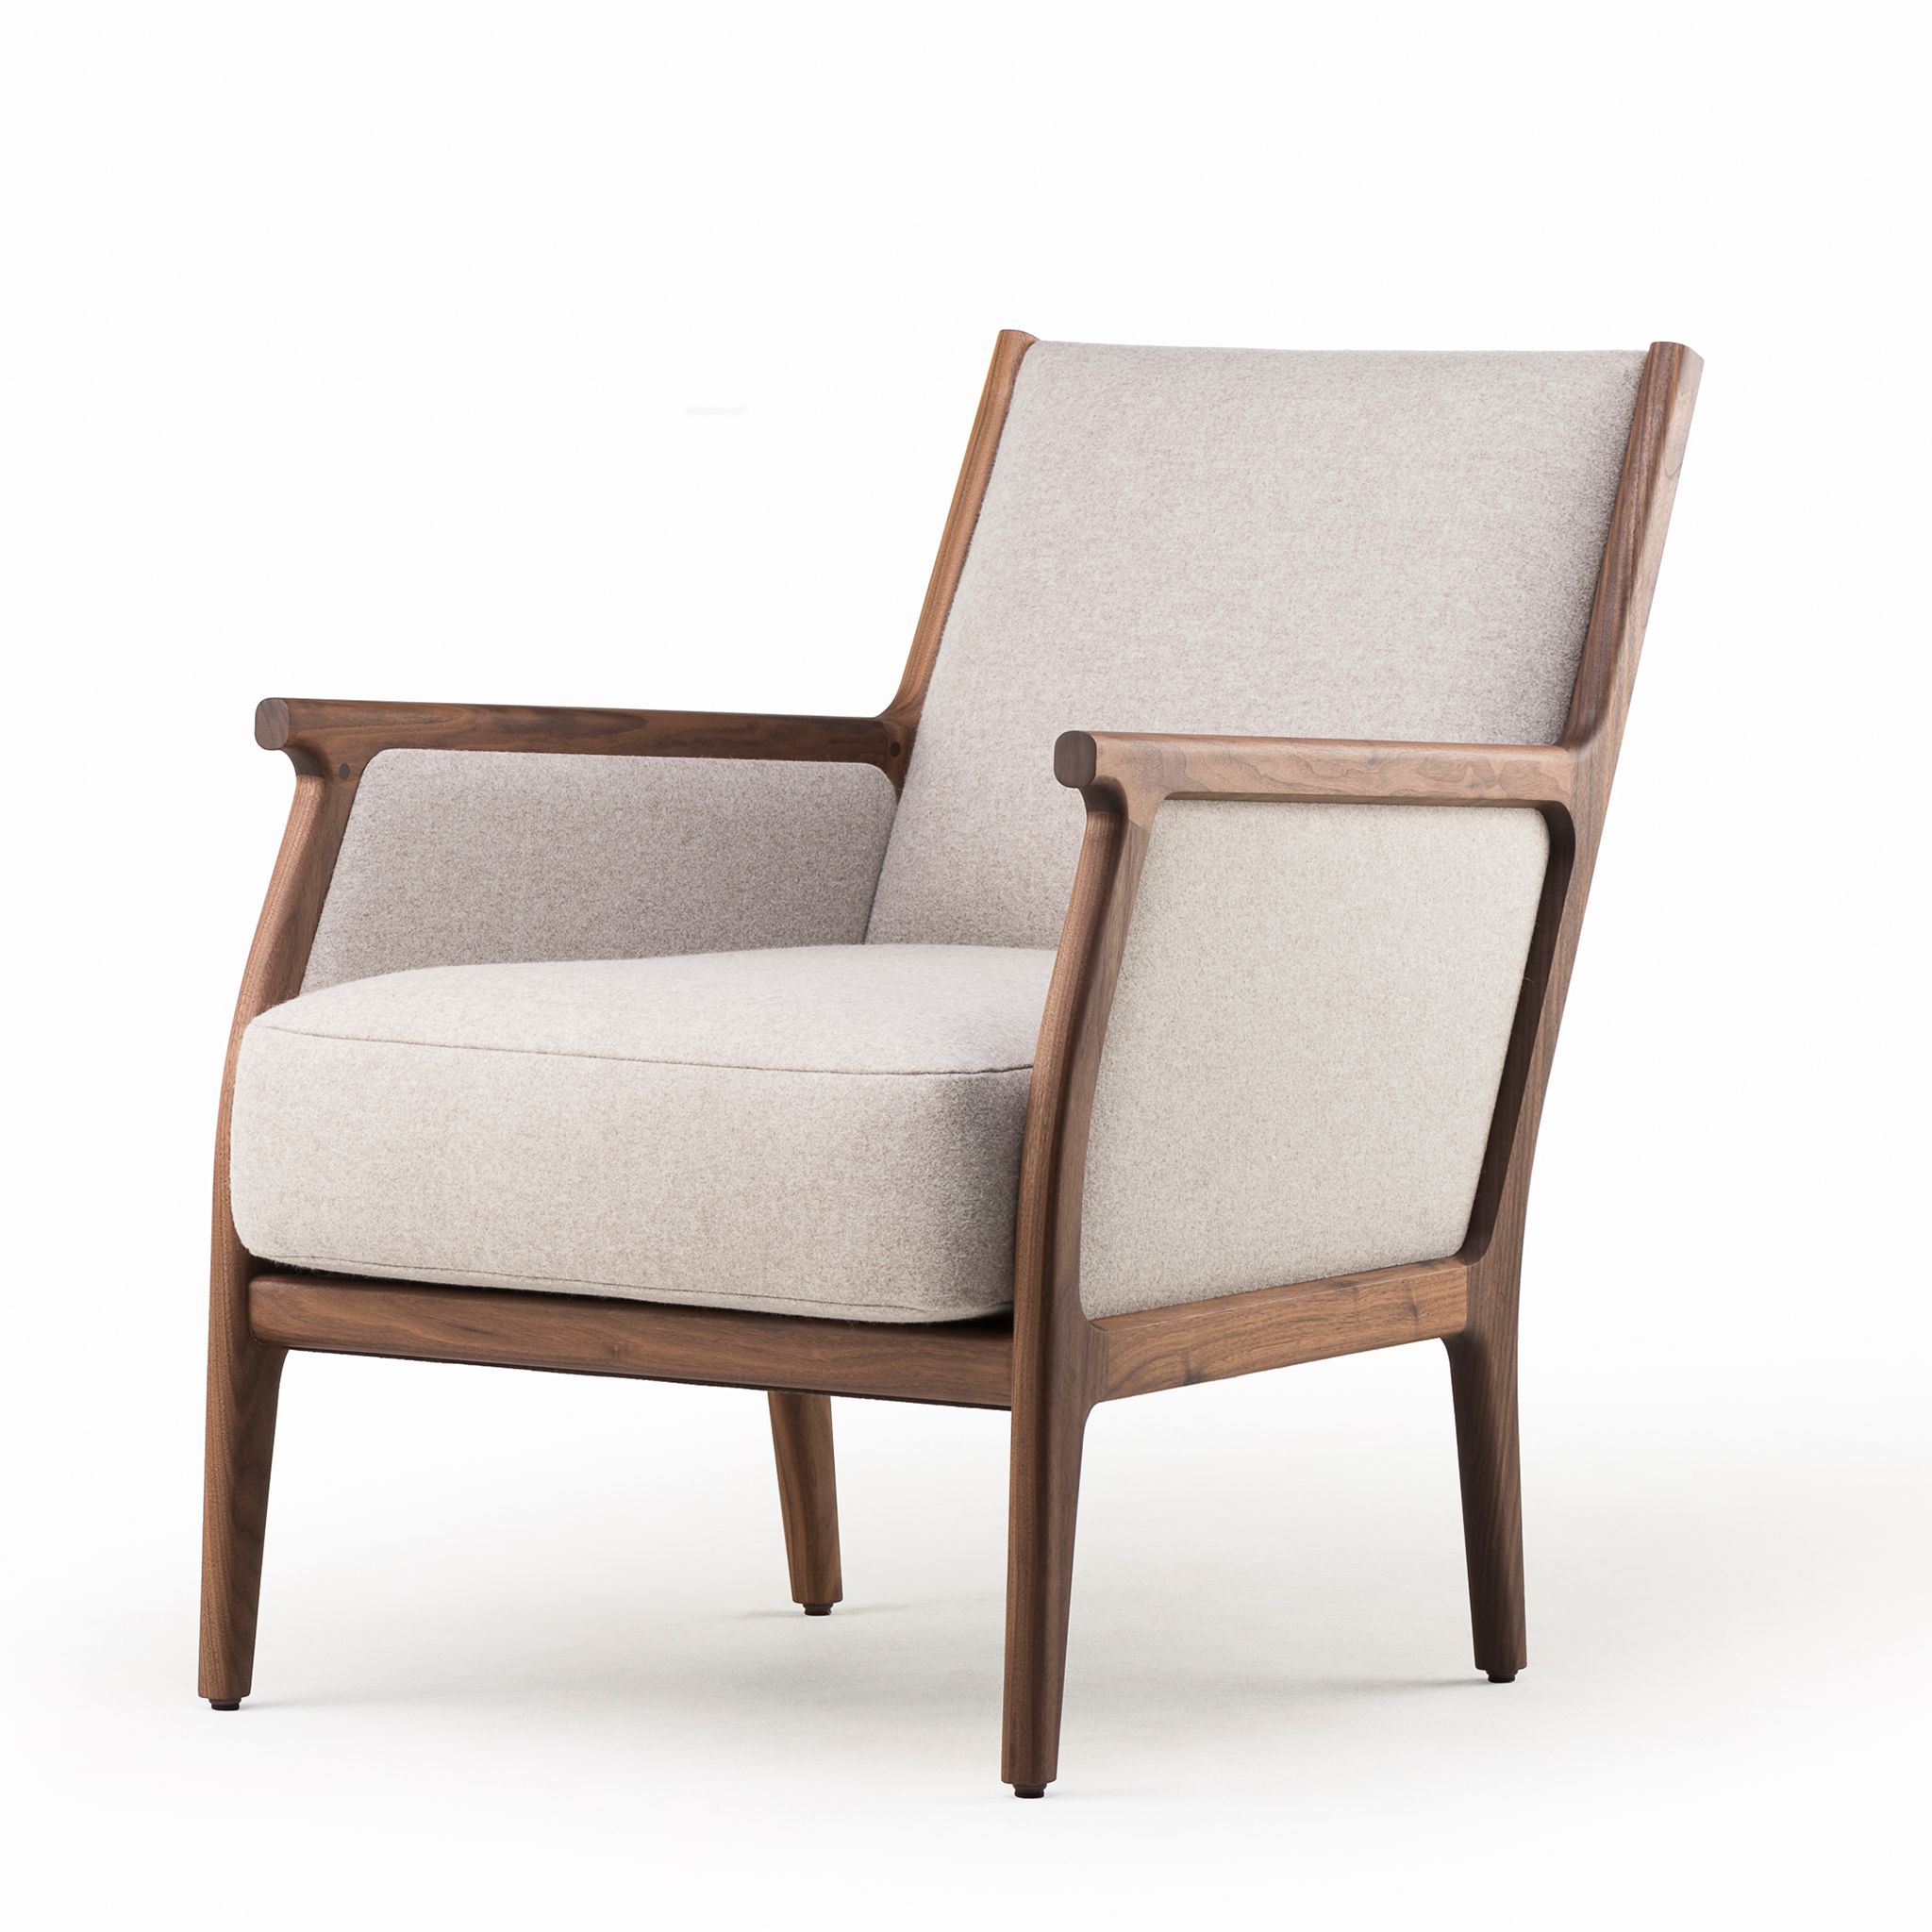 Mira Lounge Chair by Matthew Hilton